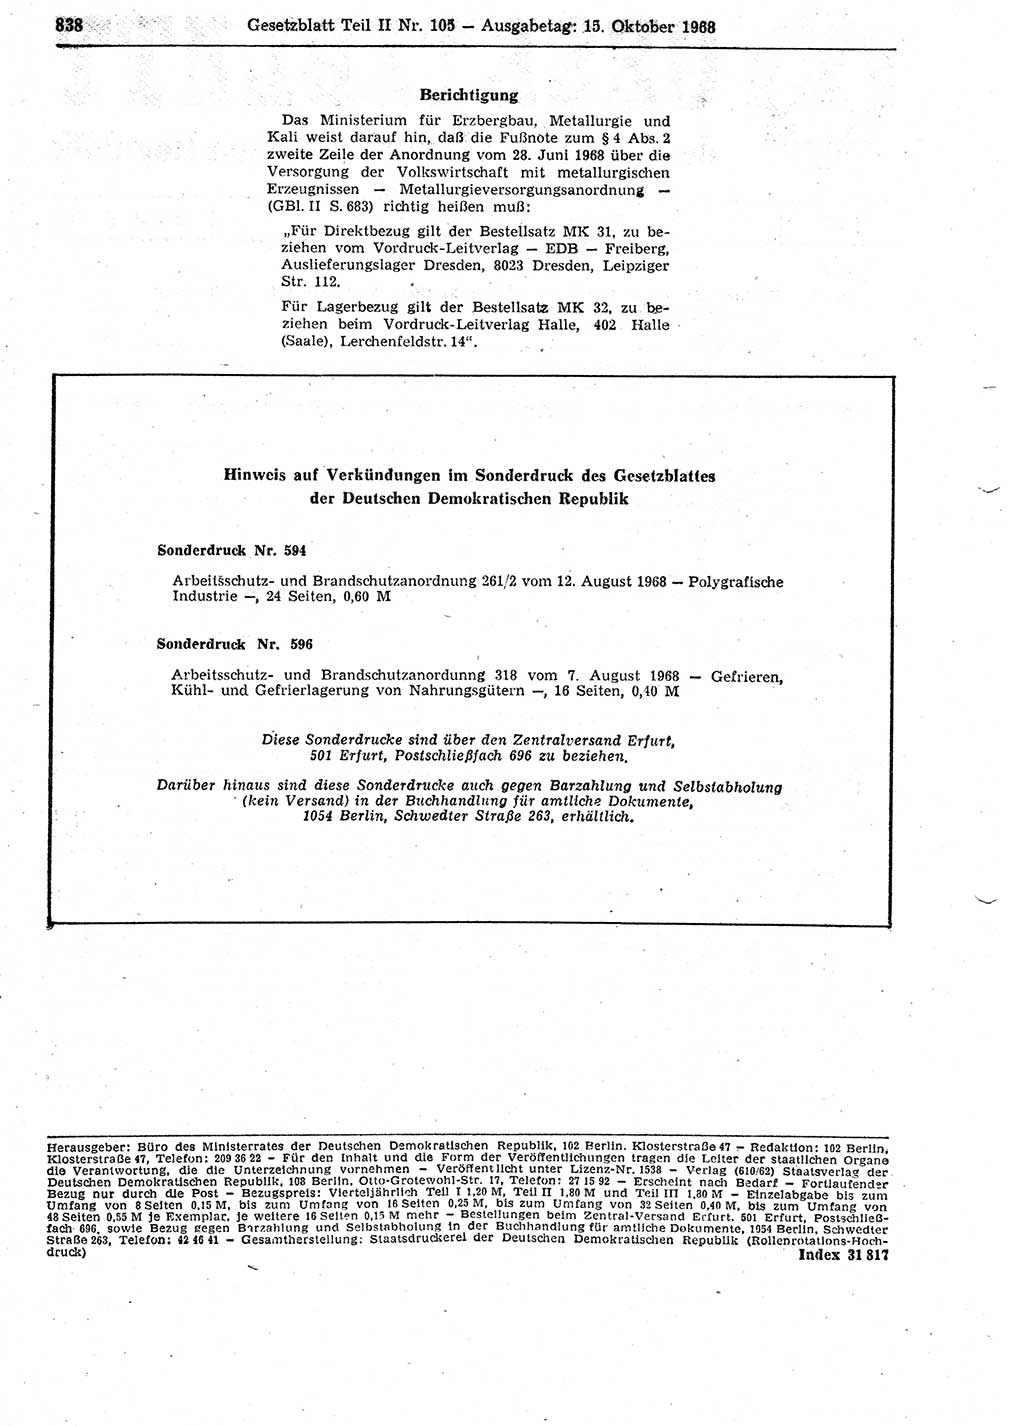 Gesetzblatt (GBl.) der Deutschen Demokratischen Republik (DDR) Teil ⅠⅠ 1968, Seite 838 (GBl. DDR ⅠⅠ 1968, S. 838)